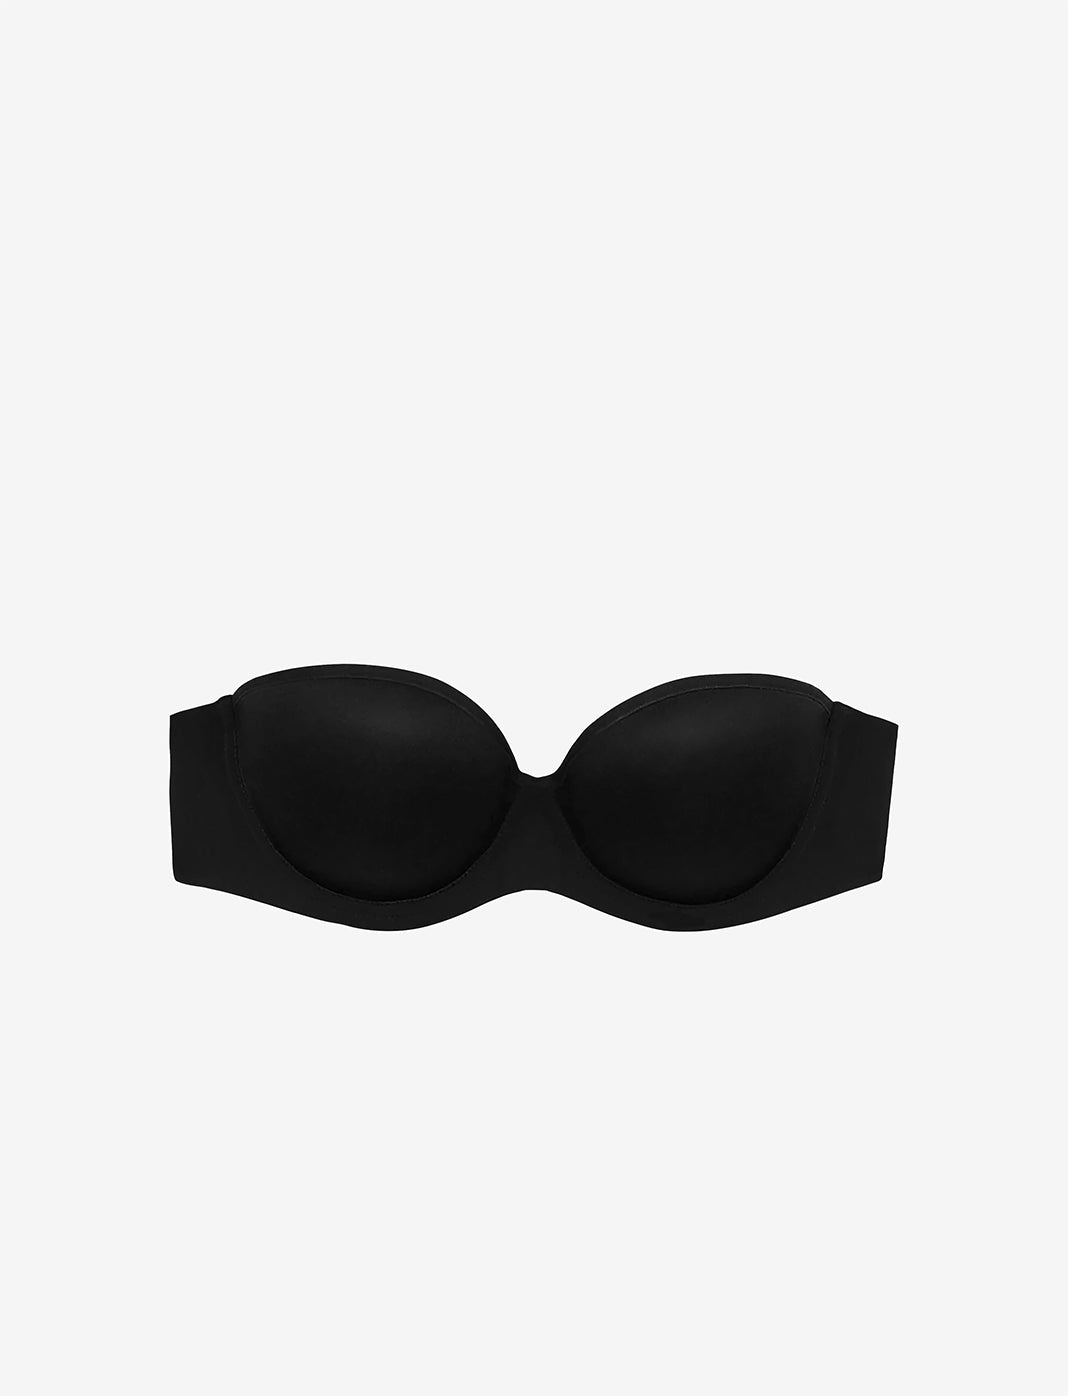 32d classic black Victoria’s Secret bra. True to